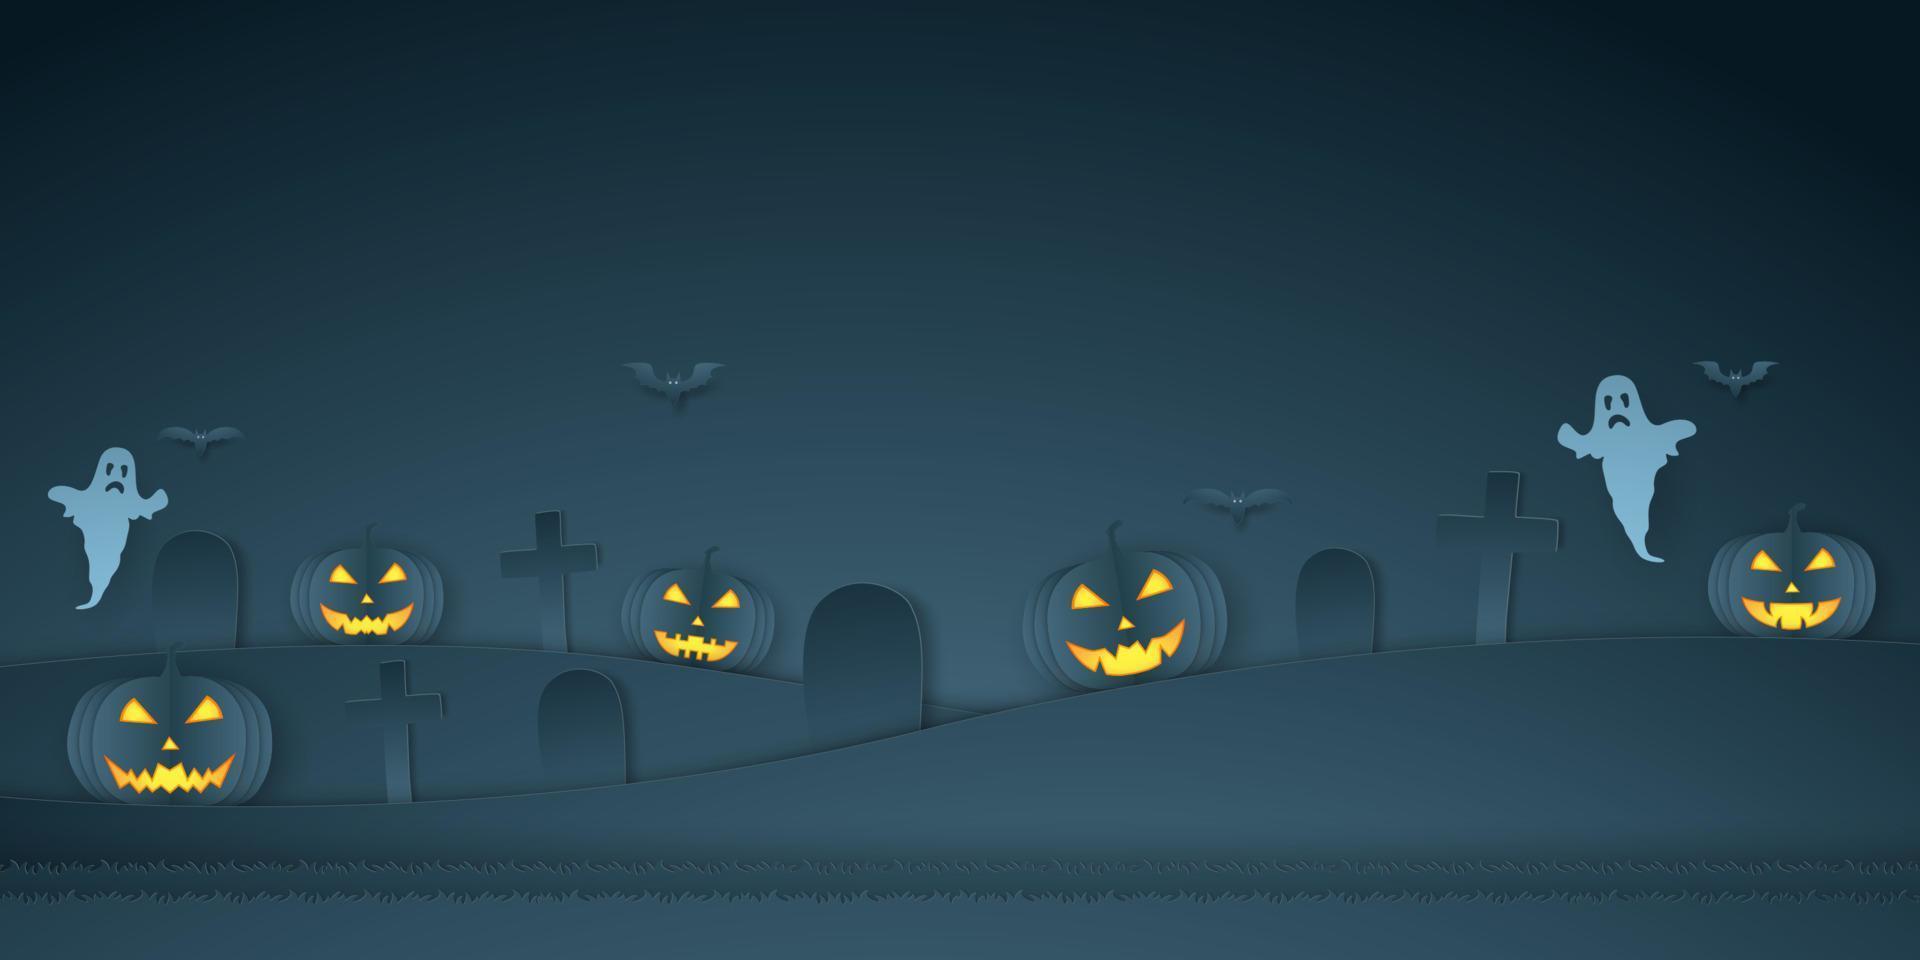 calabaza de halloween con cementerio, murciélago y fantasma, estilo de arte en papel vector